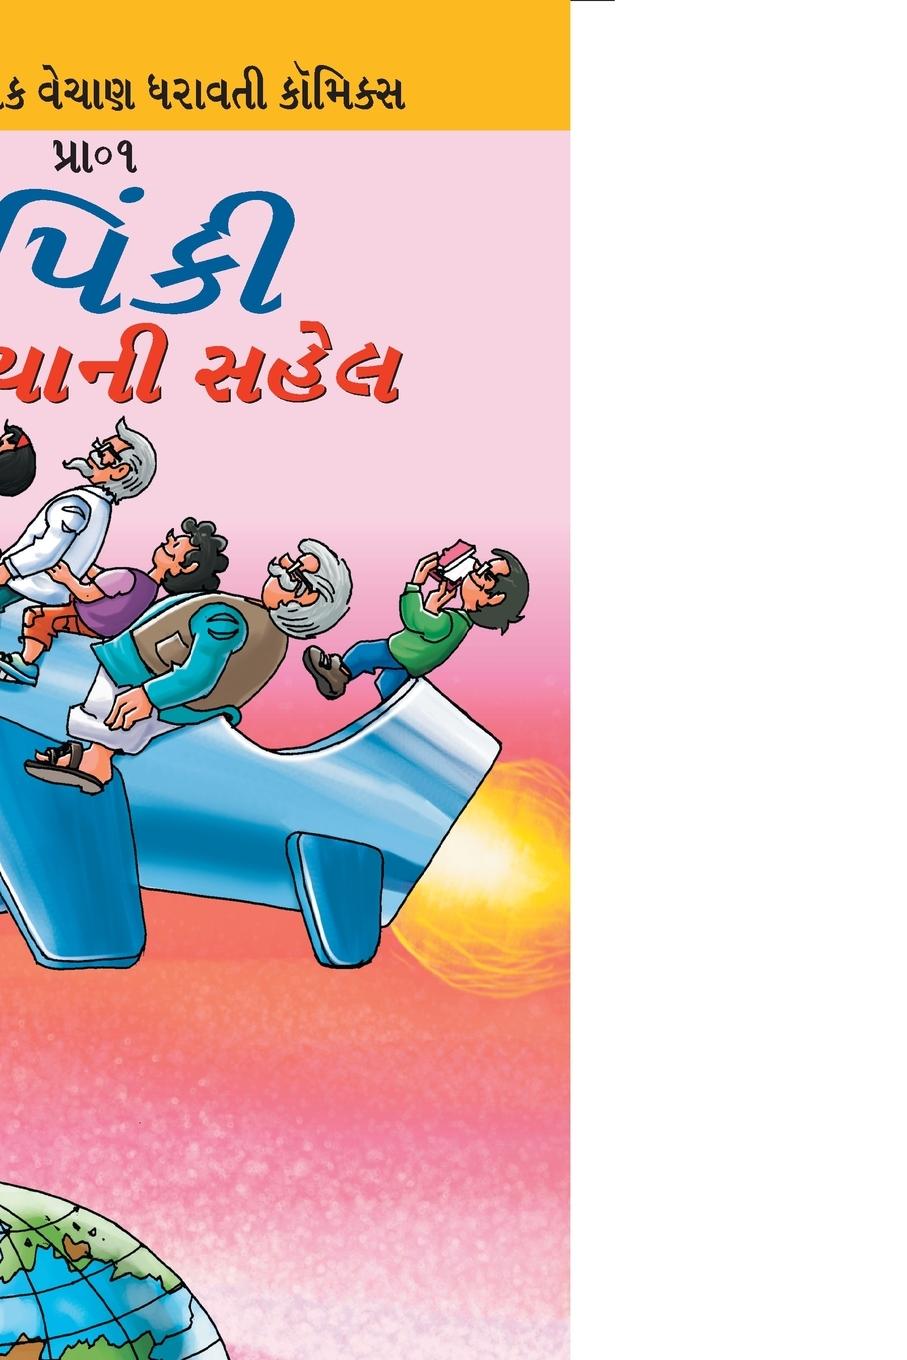 Книга Pinki World Tour in Gujarati 